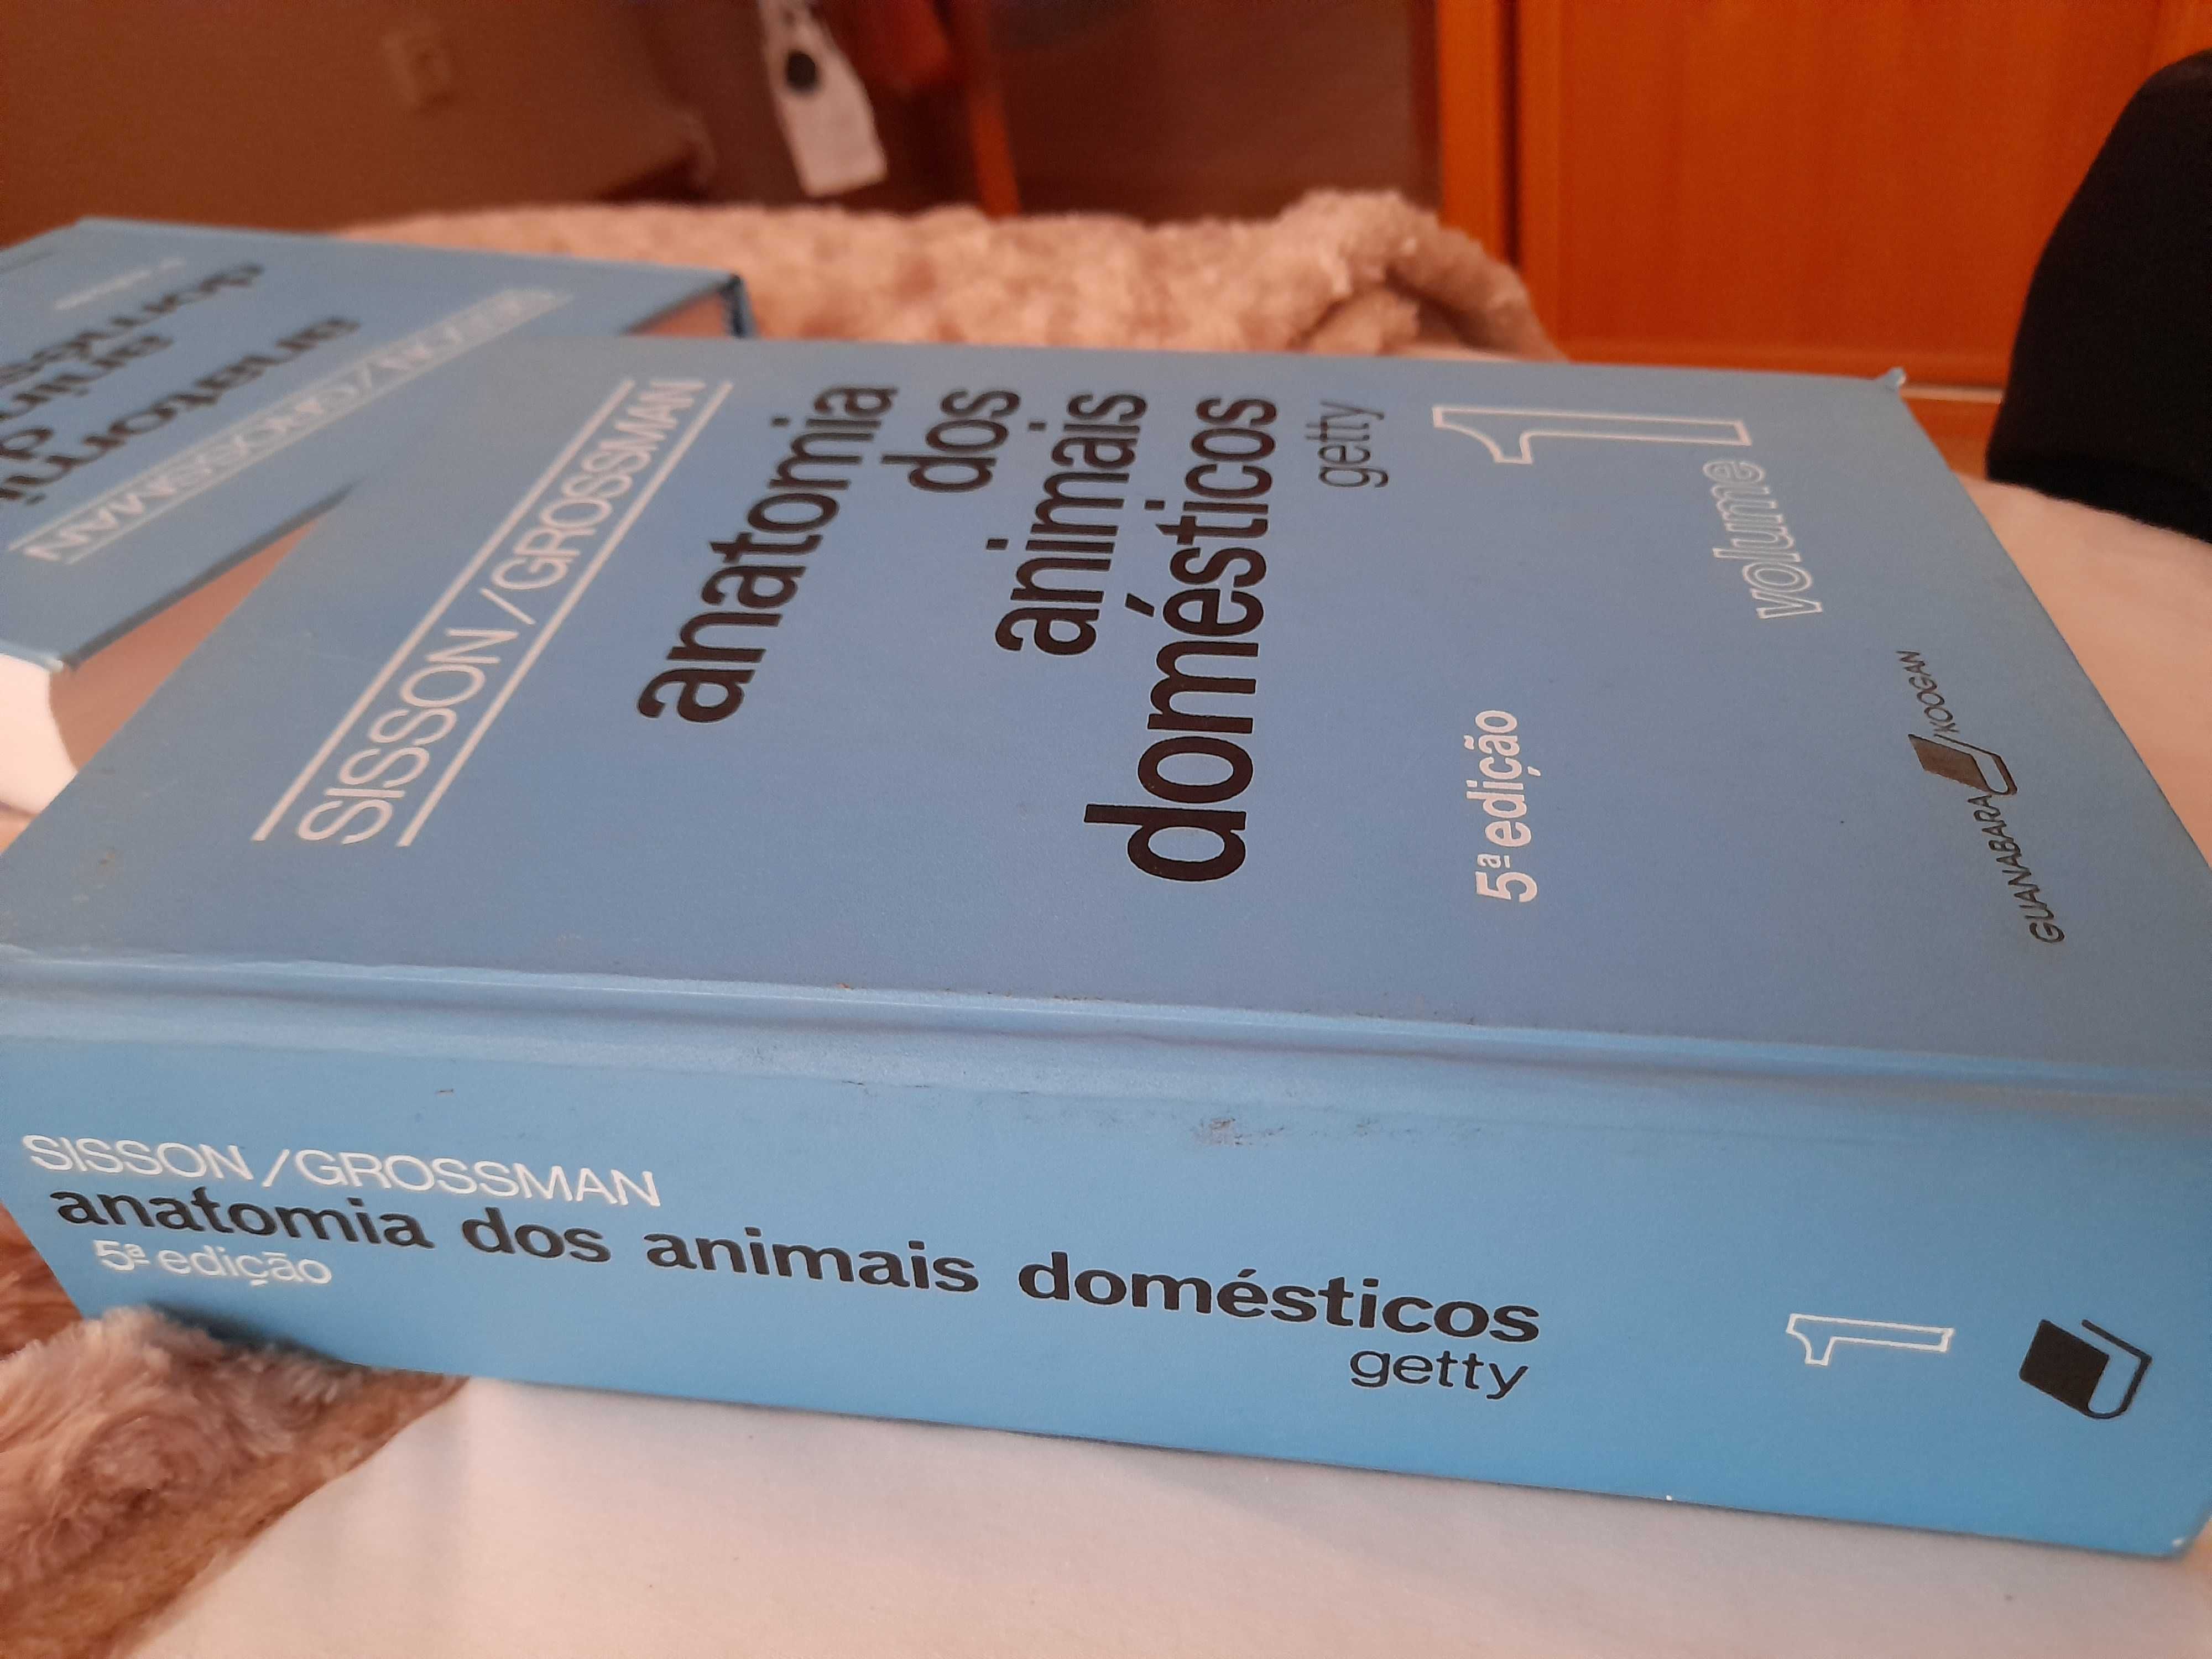 Anatomia dos animais domésticos Sisson/Grossman vol. 1 e vol. 2